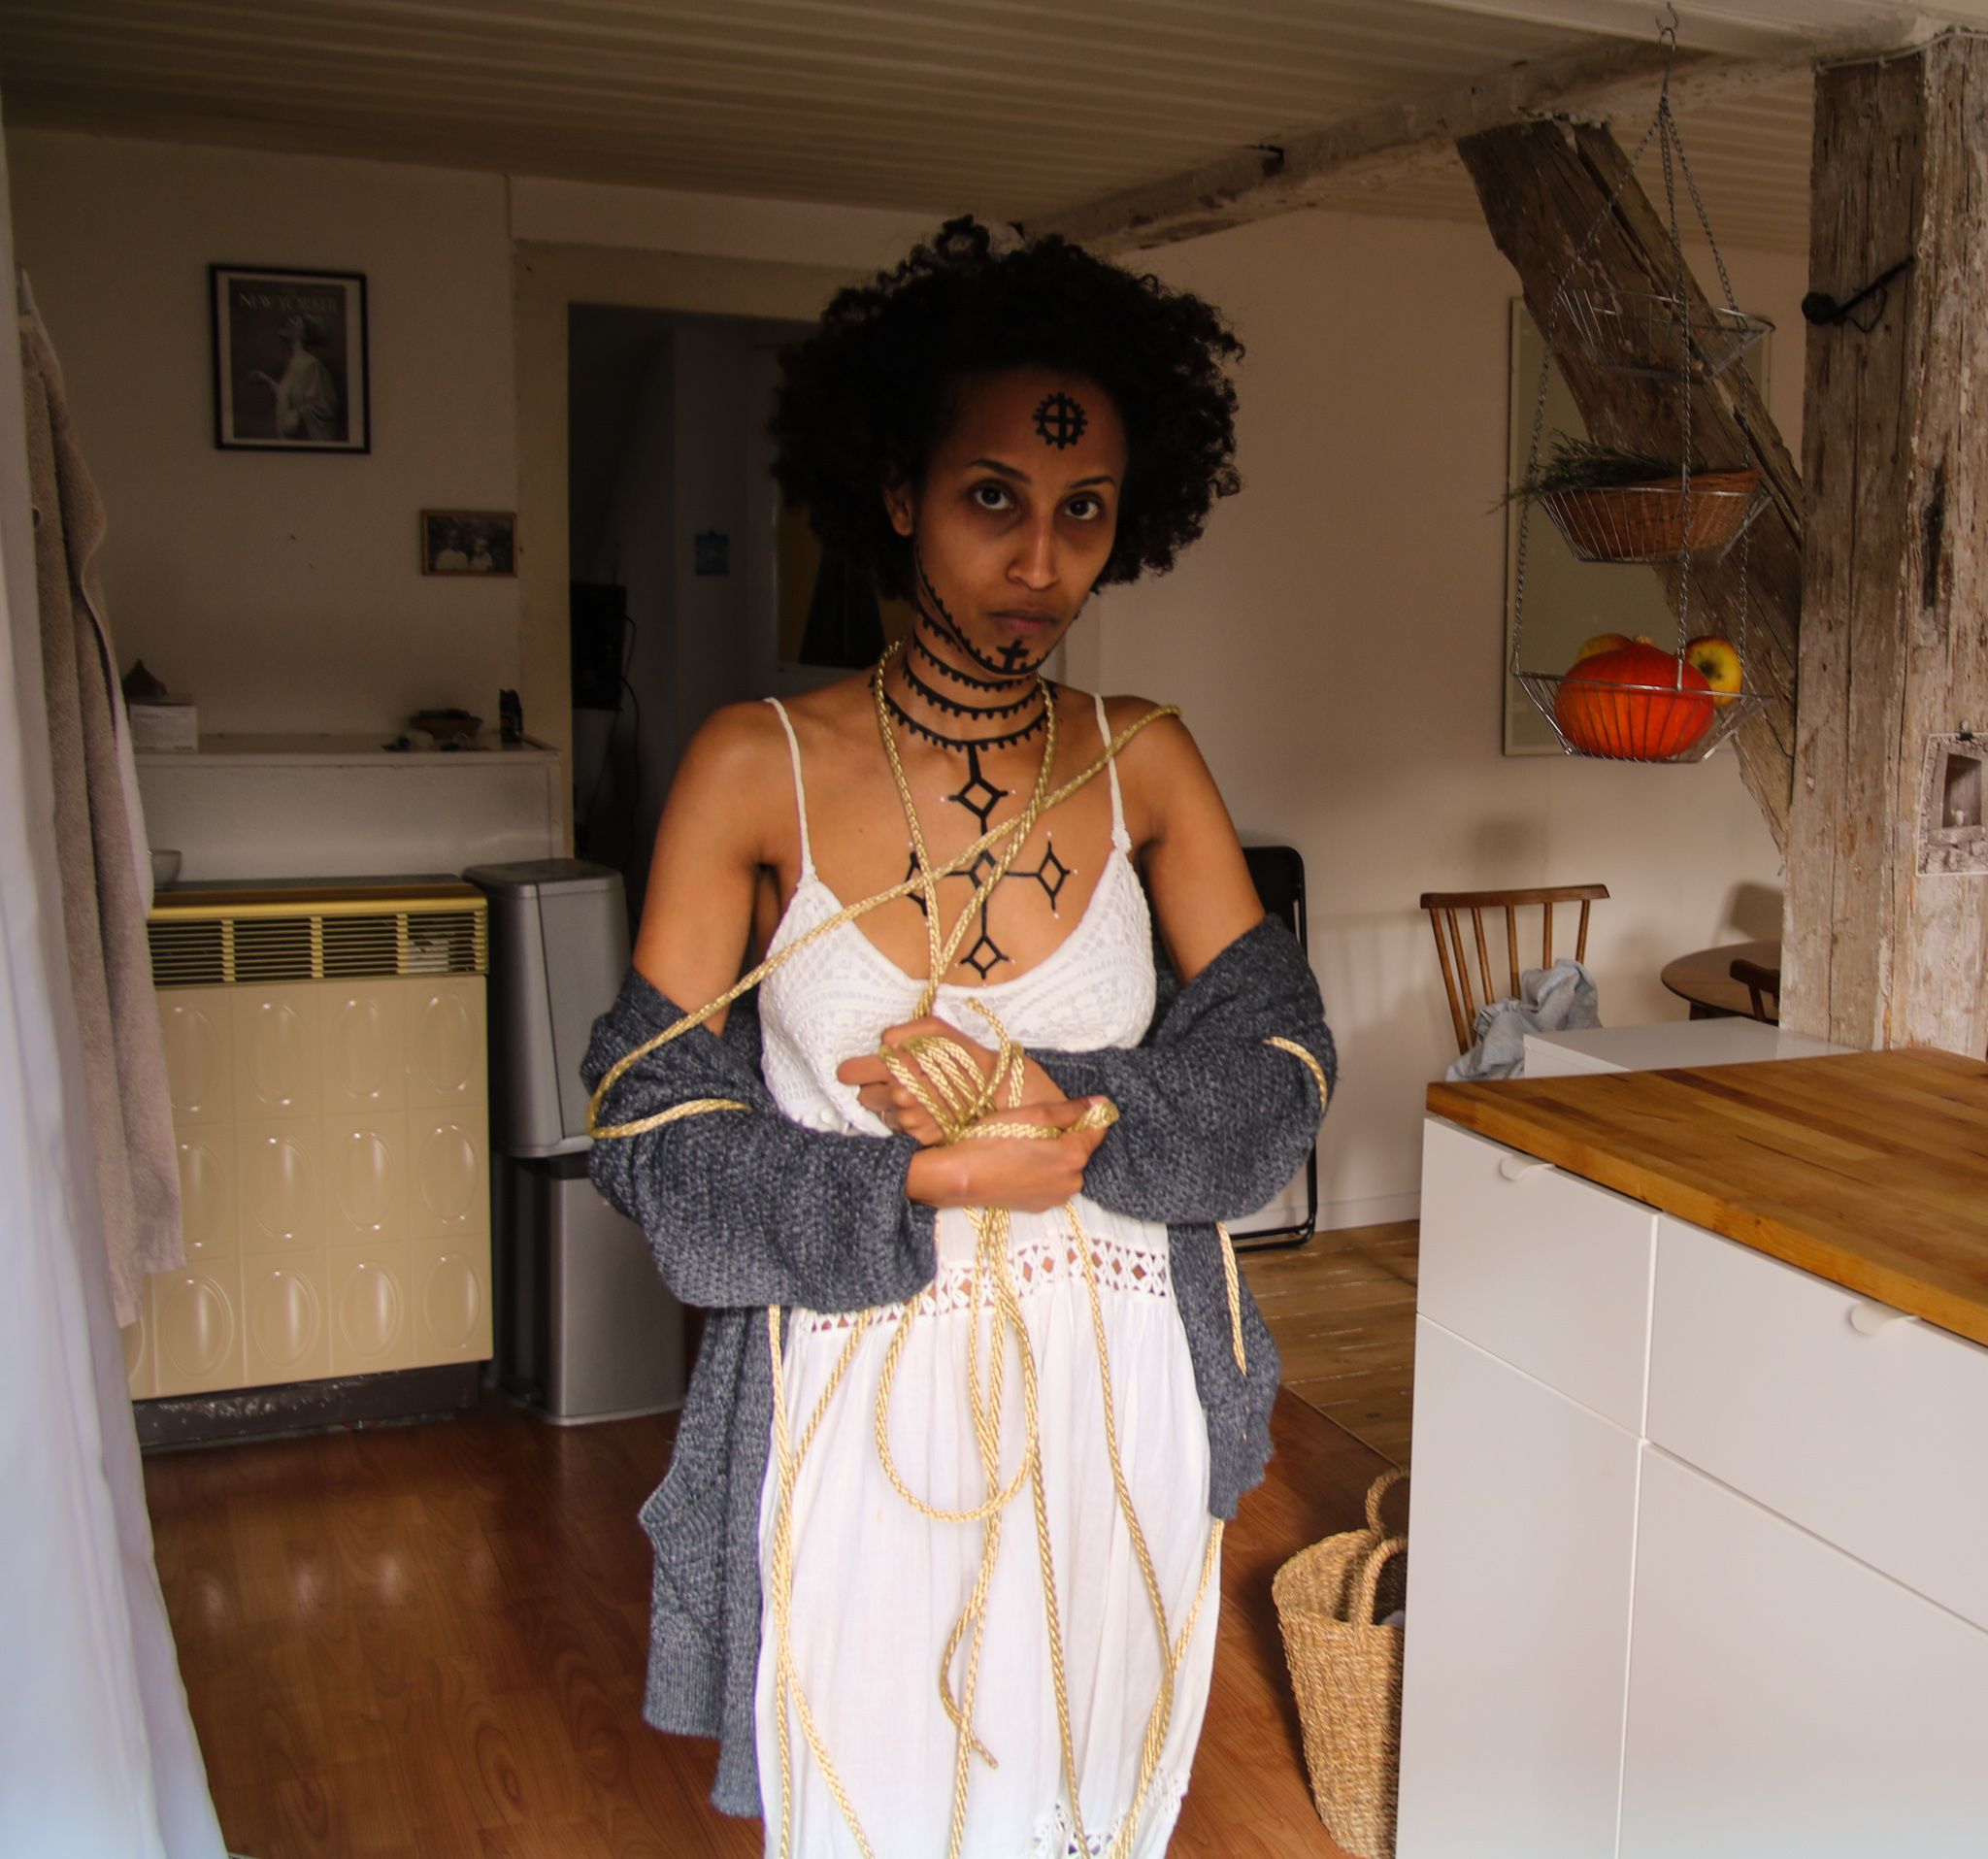 Im Bildmittelpunkt steht eine Frau mit Blick in die Kamera. Ihr Brustkorb, Hals und Gesicht sind mit äthiopischen Tätowierungen bemalt. Sie hält ihre Arme leicht vor ihrem Bauch verschränkt. Um ihren Körper und Hände ist ein Seil geschlungen.